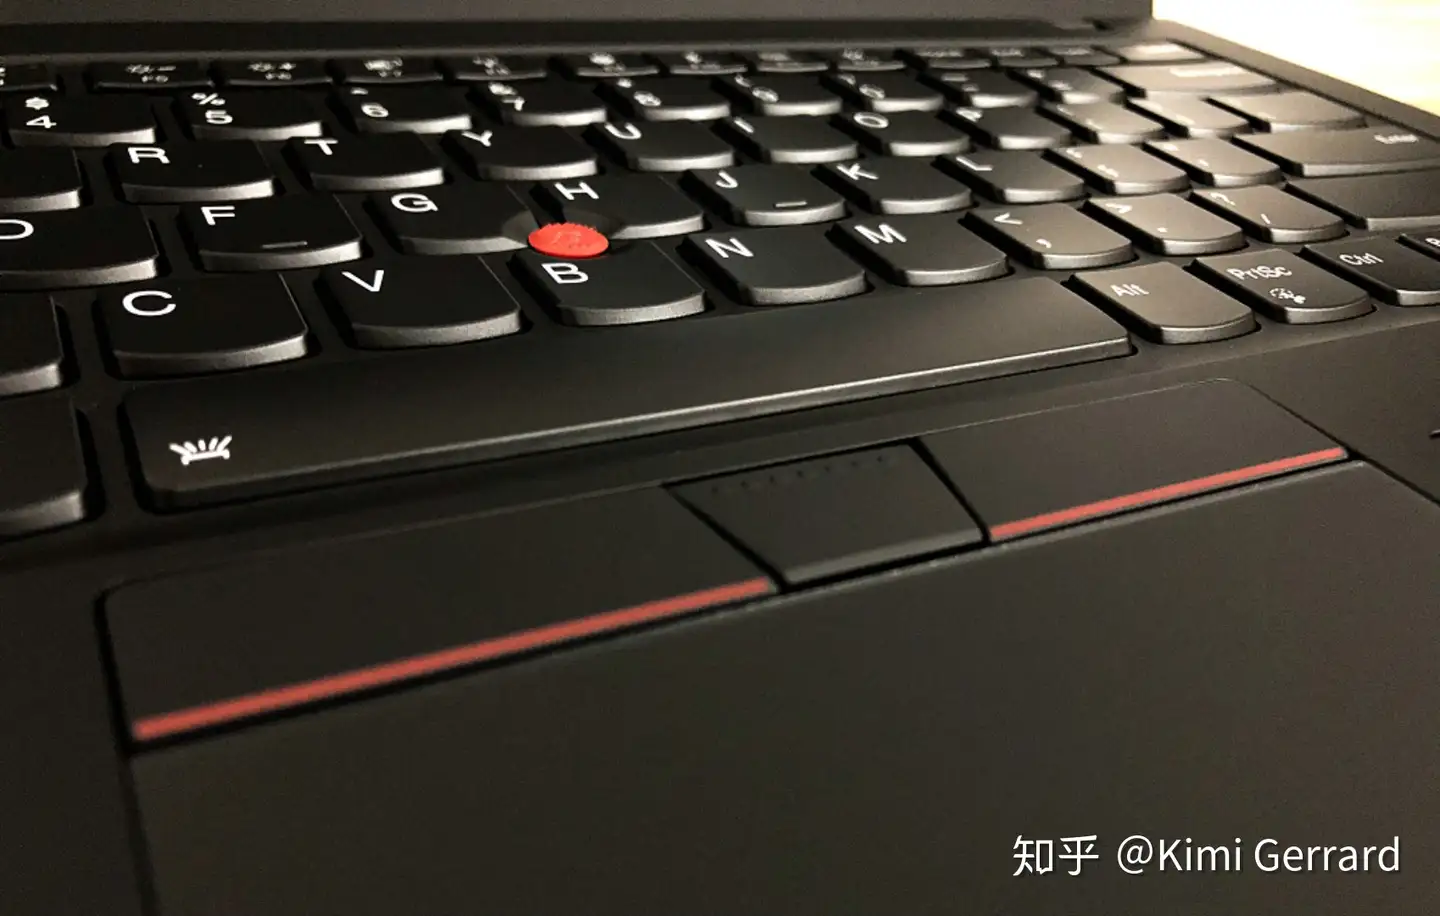 一步之遥」- ThinkPad X1 Carbon Gen 7 (2019) 评述- 知乎